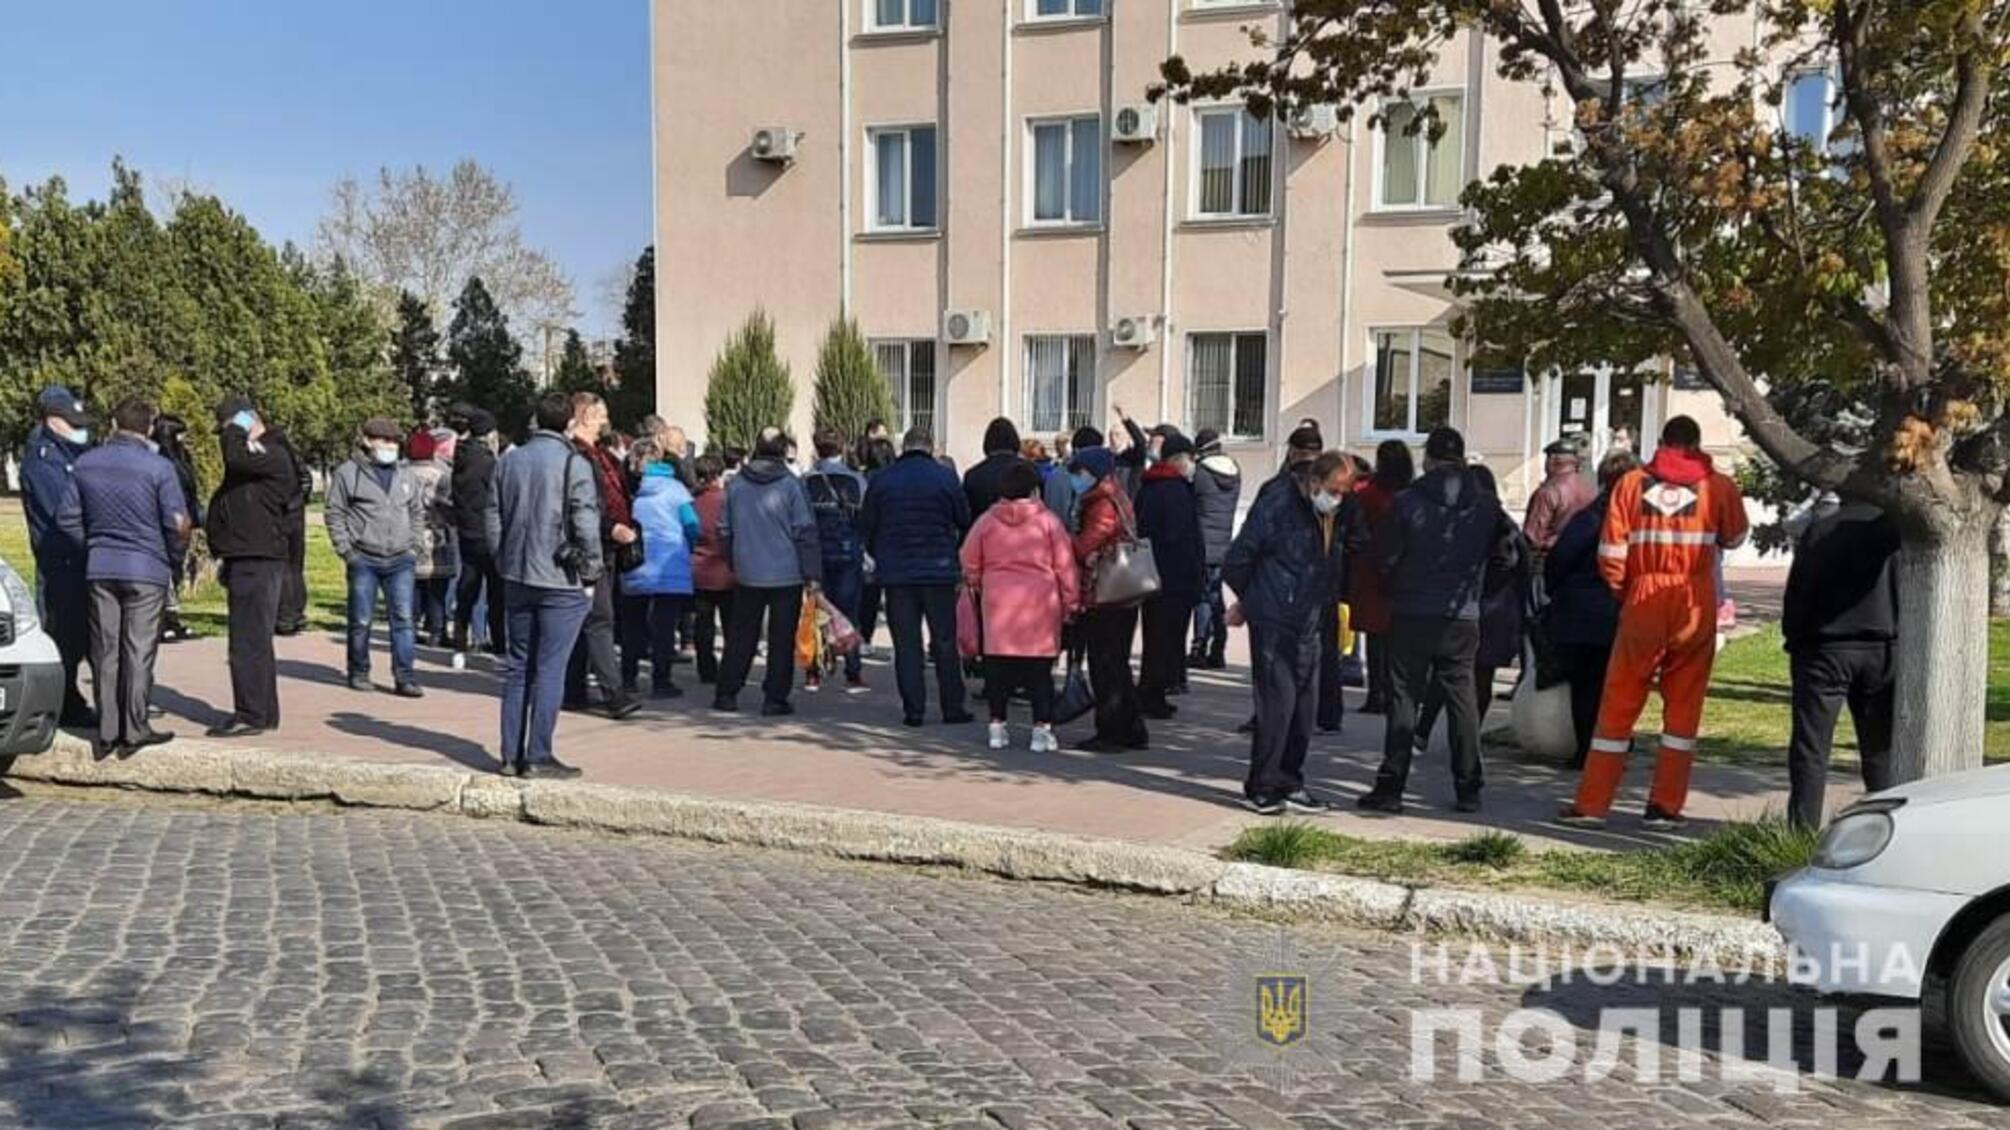 Правоохоронці не допустили порушень правопорядку в місті Білгород-Дністровський